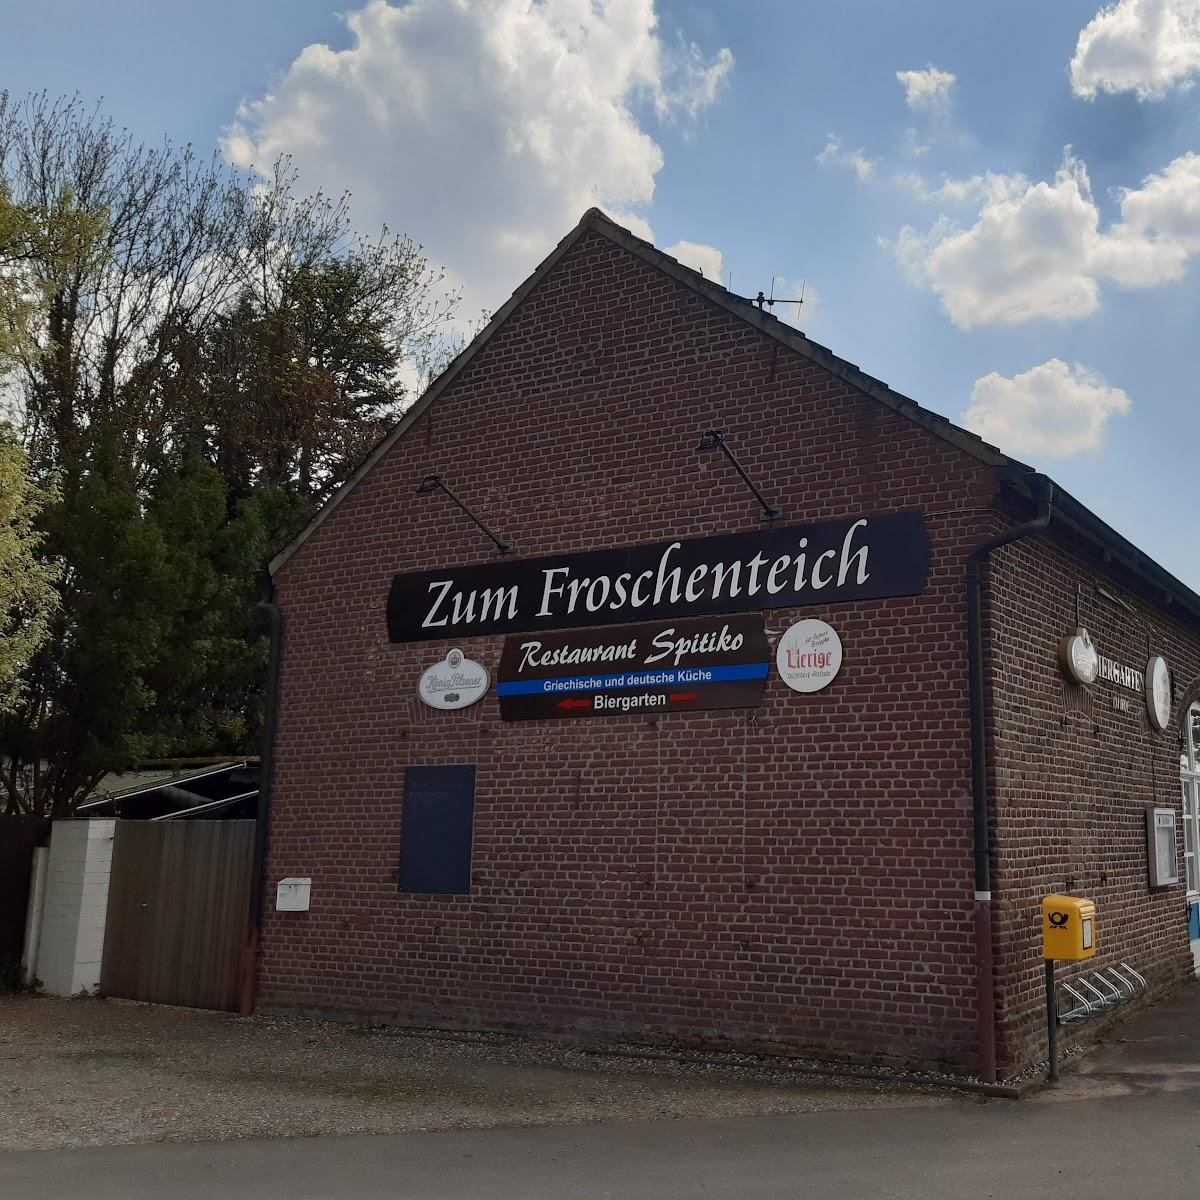 Restaurant "Gaststätte Zum Froschenteich" in Düsseldorf